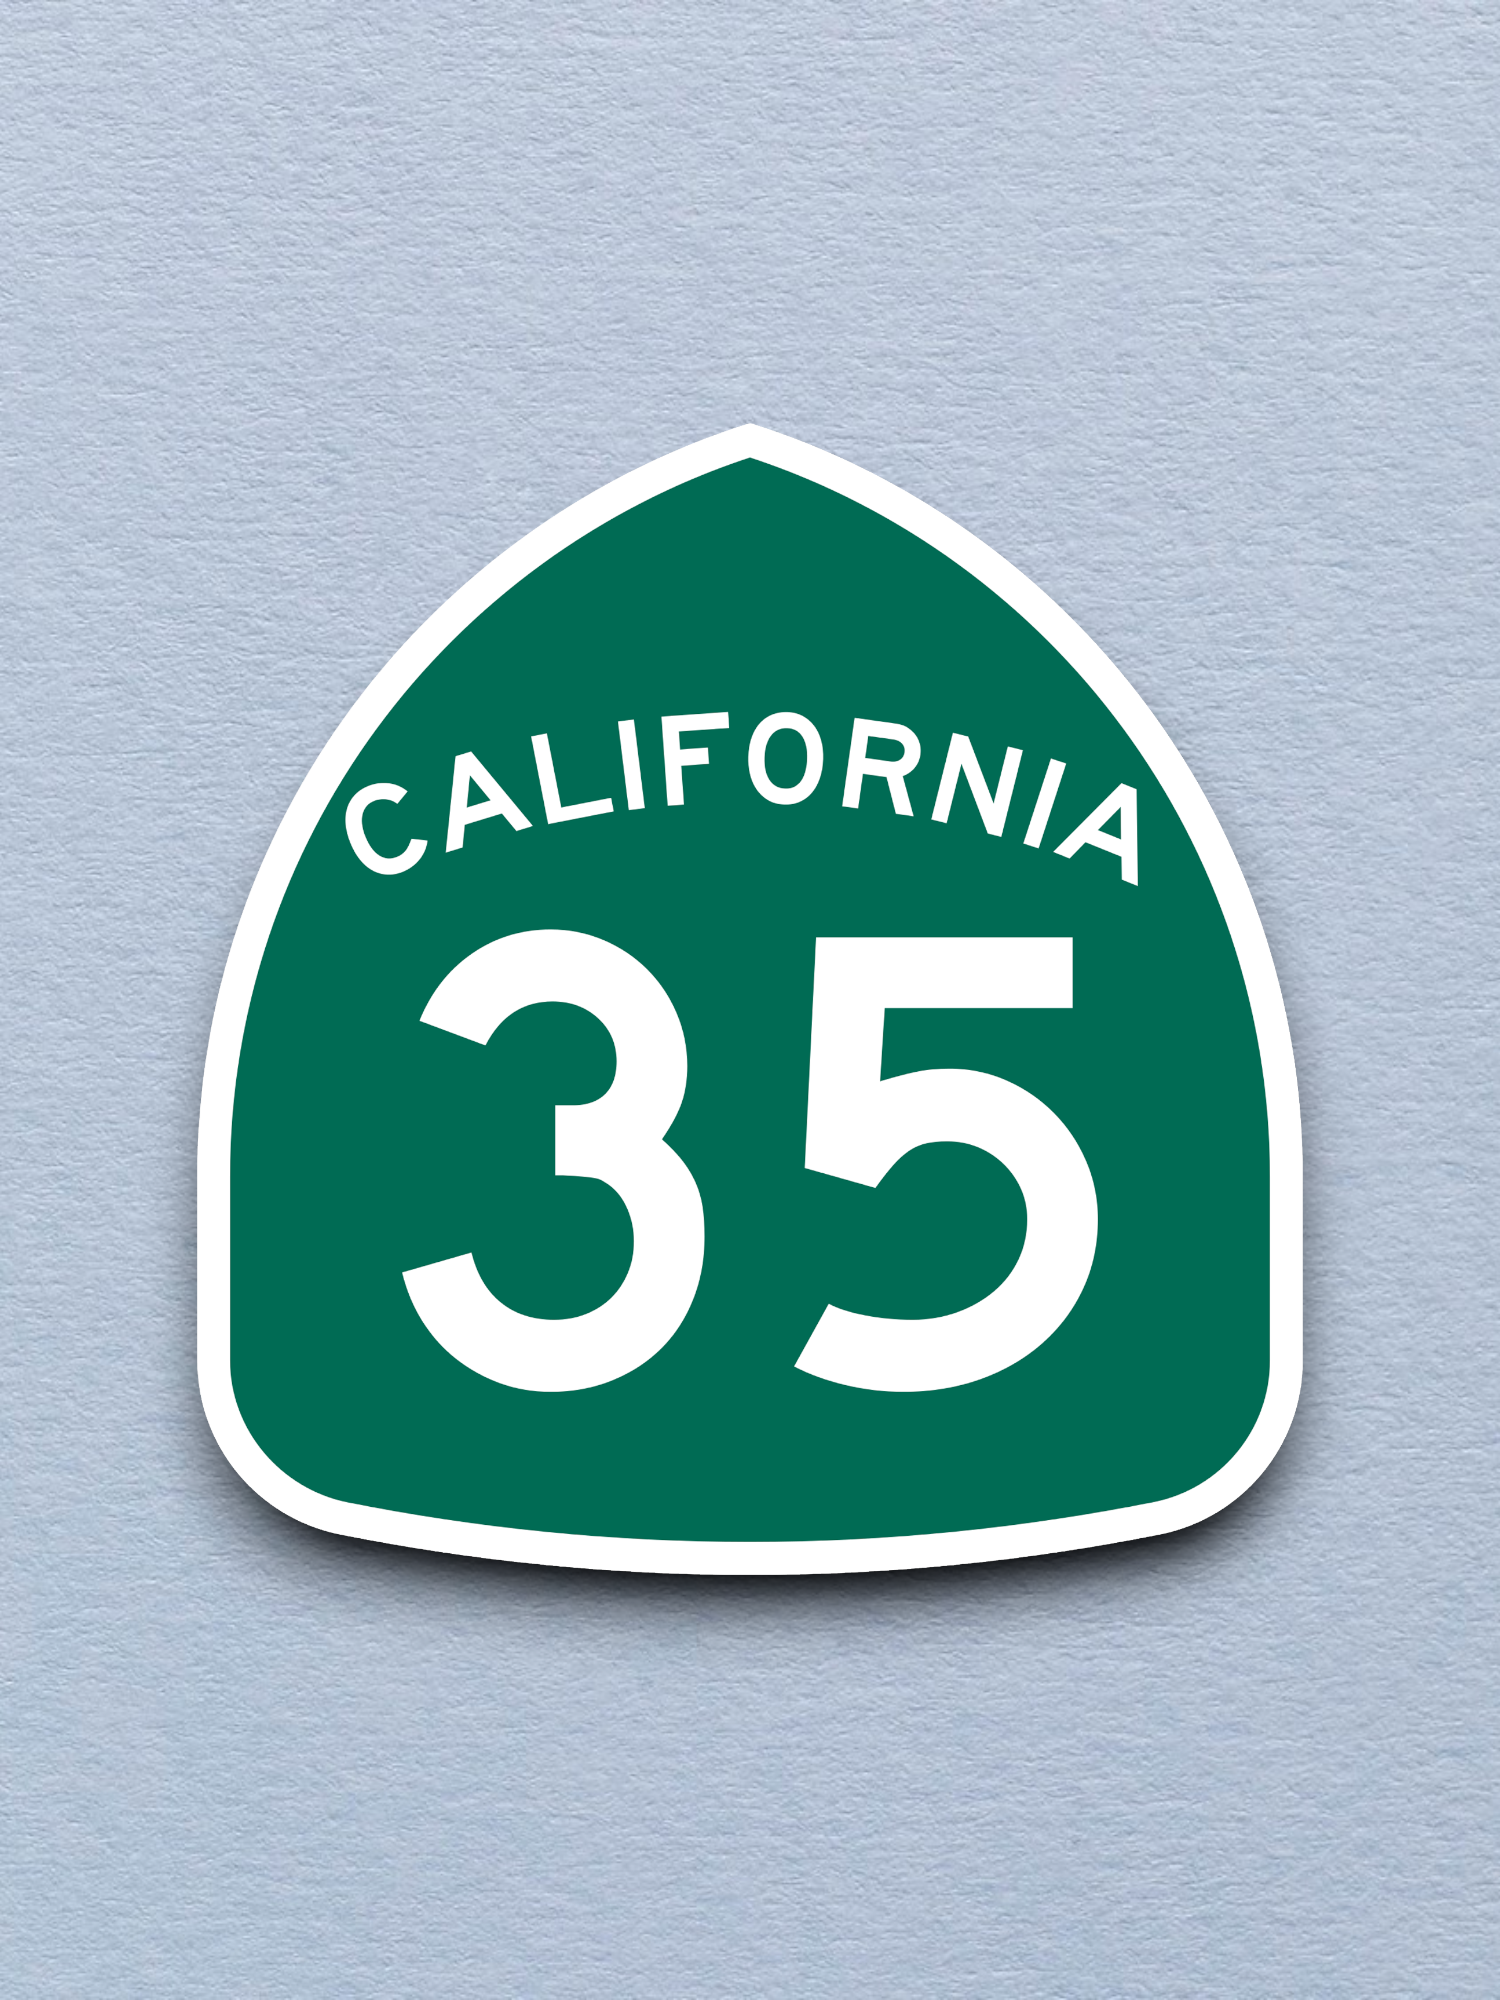 California State Route 35 Sticker